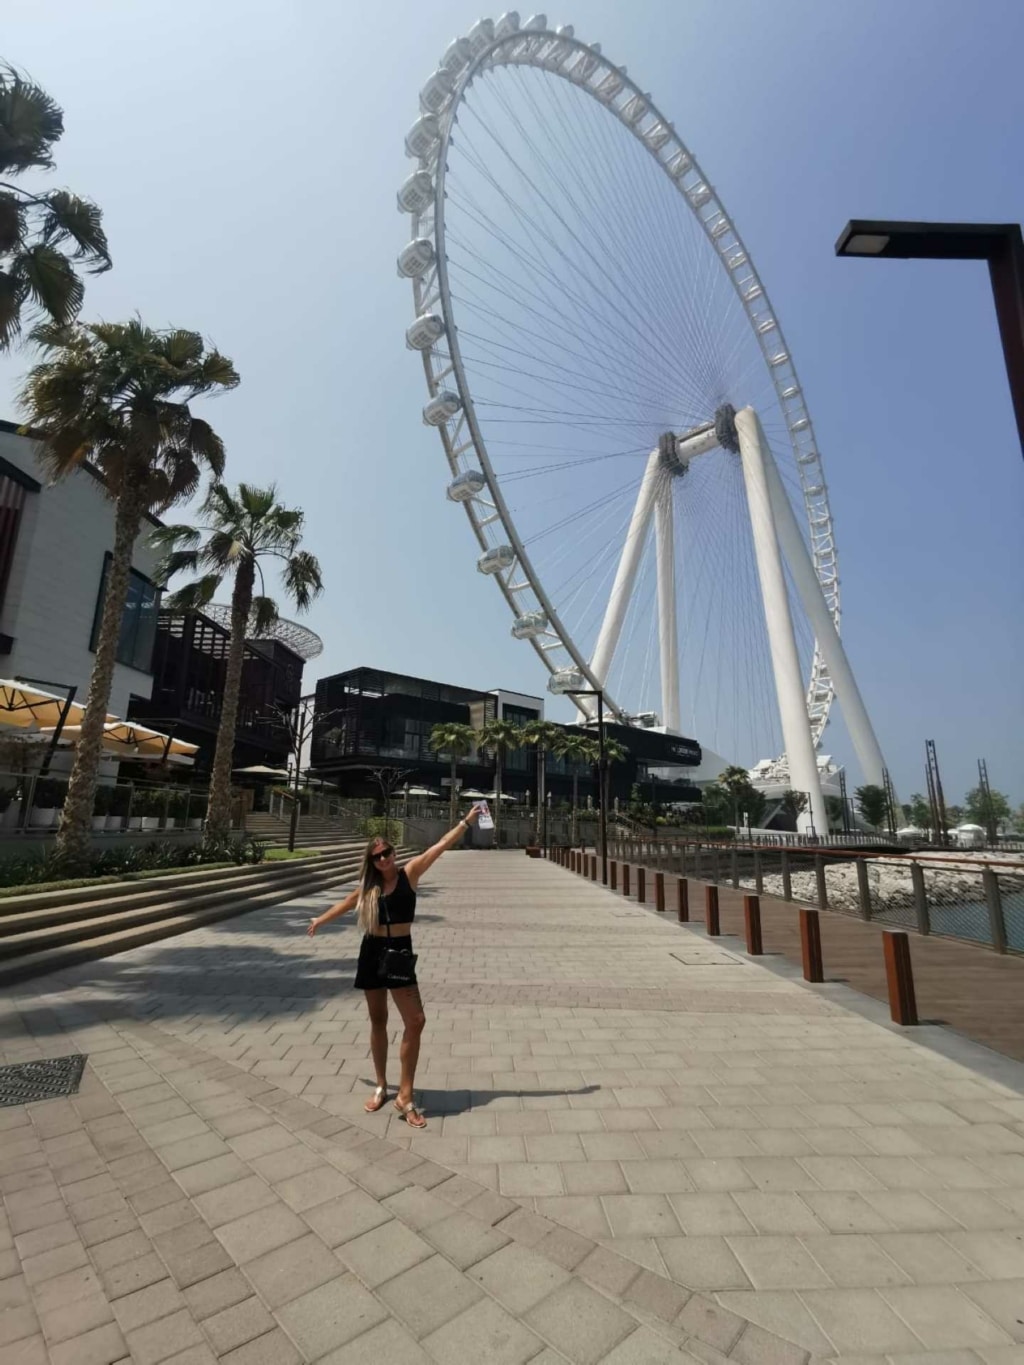 Hairdreams medewerkster Yvonne poseert voor een reuzenrad in Dubai